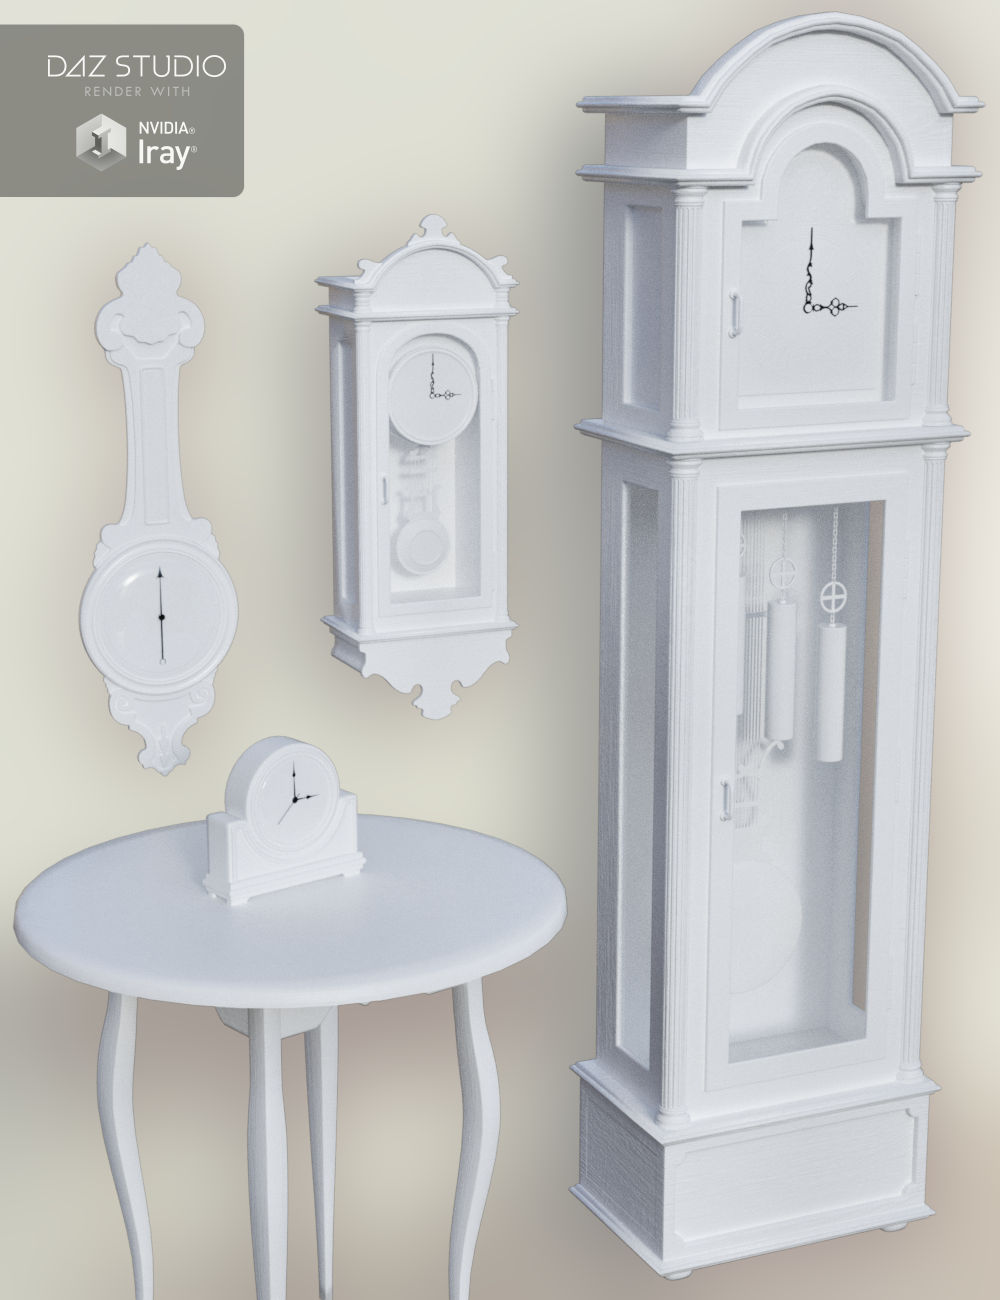 Antique Clocks by: Merlin Studios, 3D Models by Daz 3D